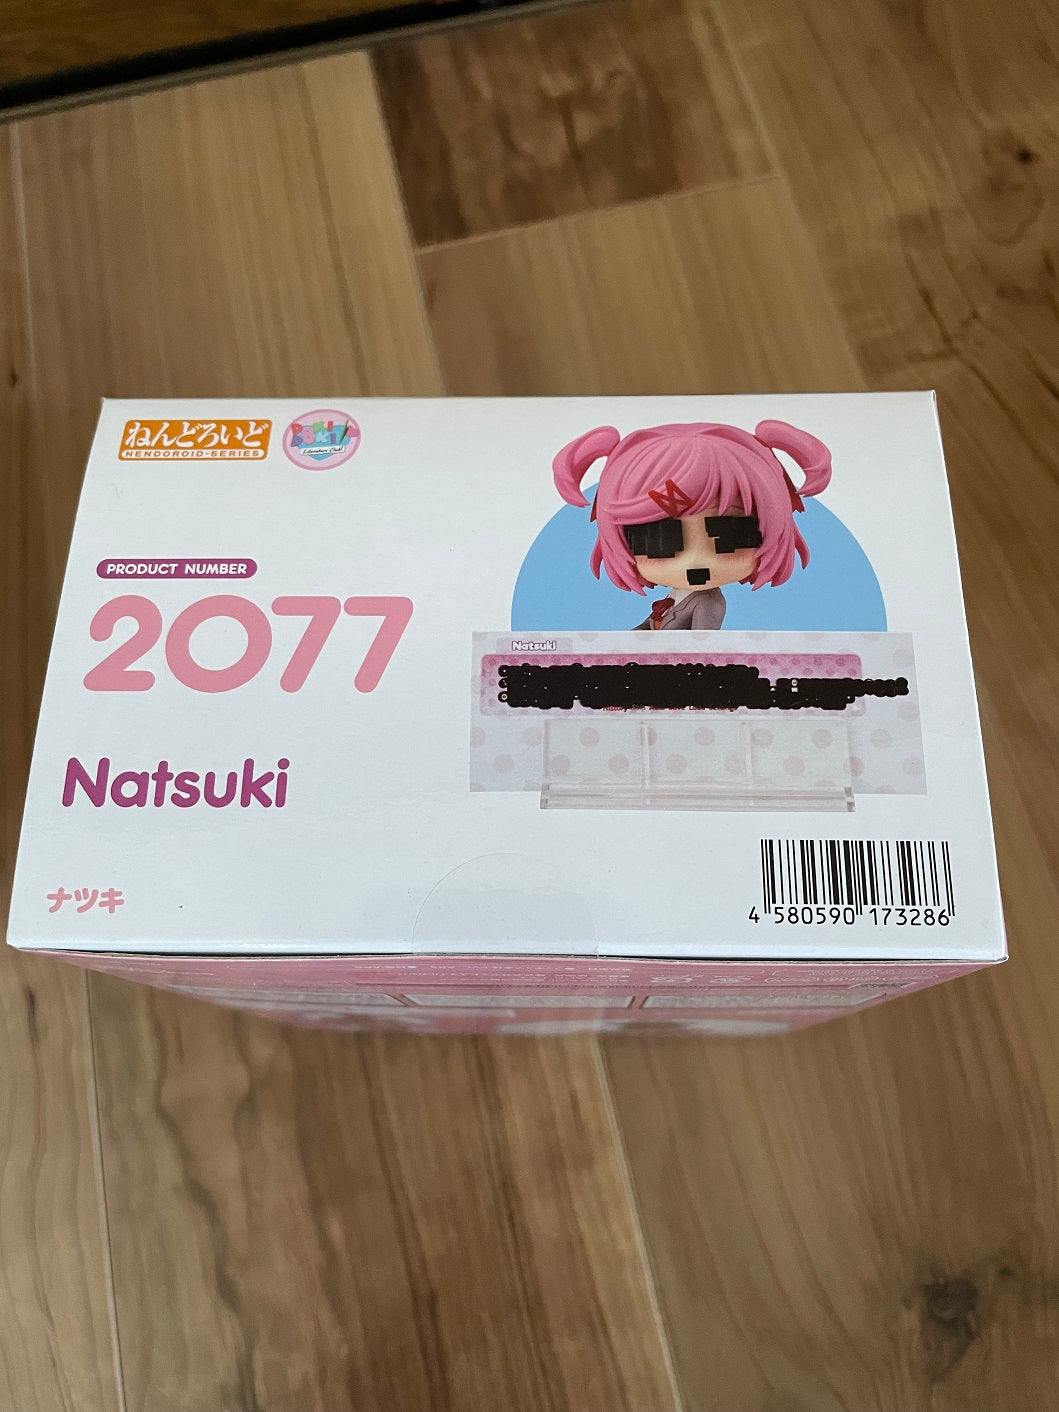 Doki Doki Nendoroid Natsuki for Sale